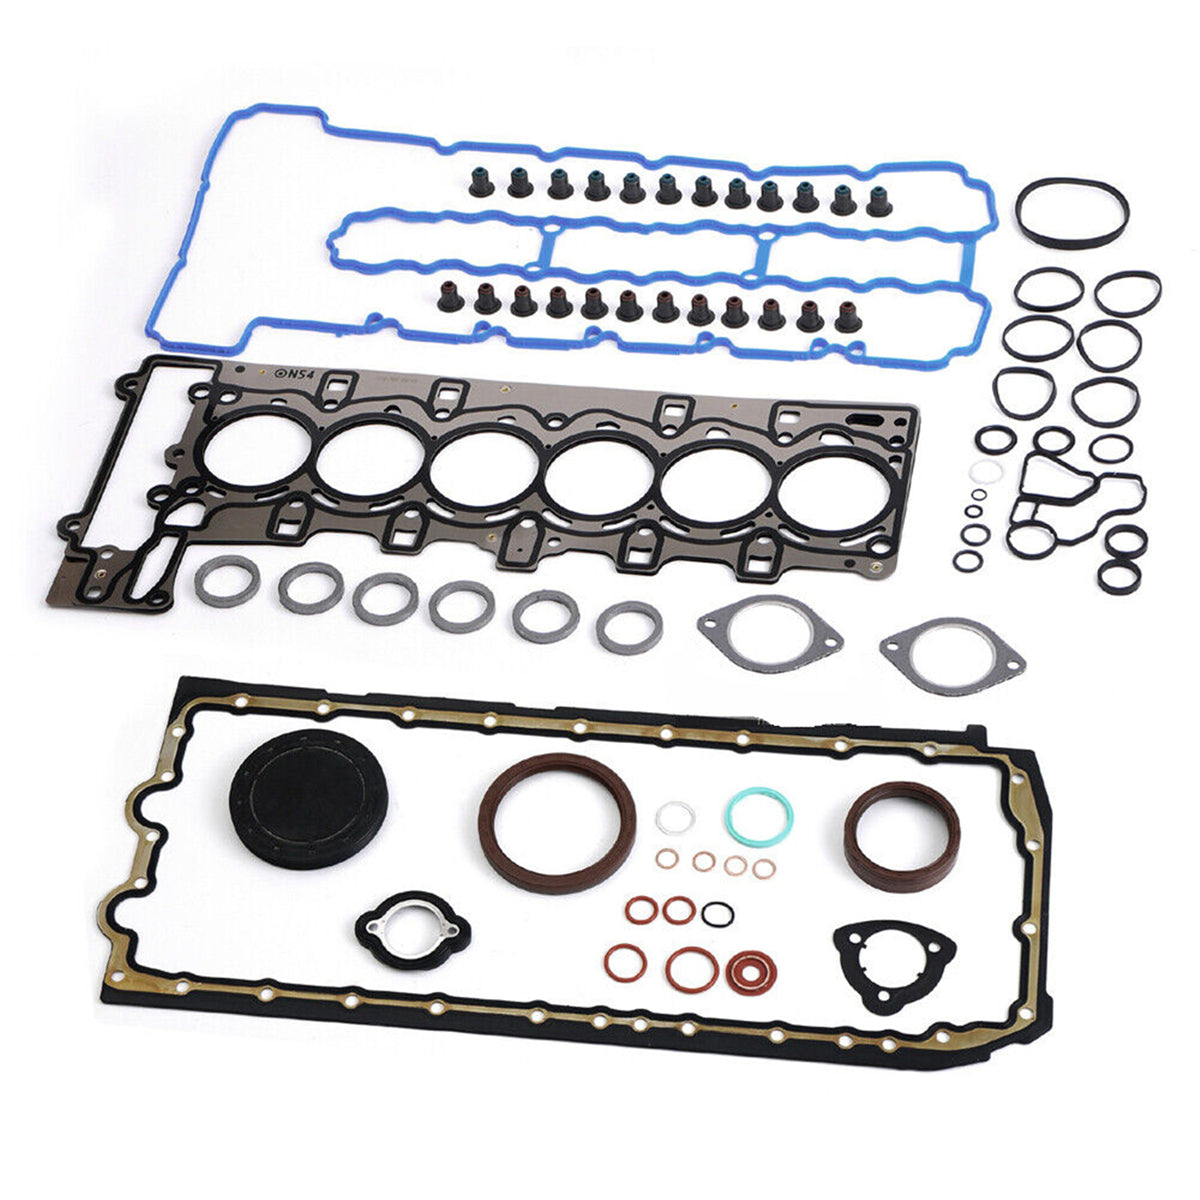 Daysyore®Engine Overhaul Gasket Seals Kit for BMW 335i 135i E60 E90 E92 E89 E71 N54 3.0